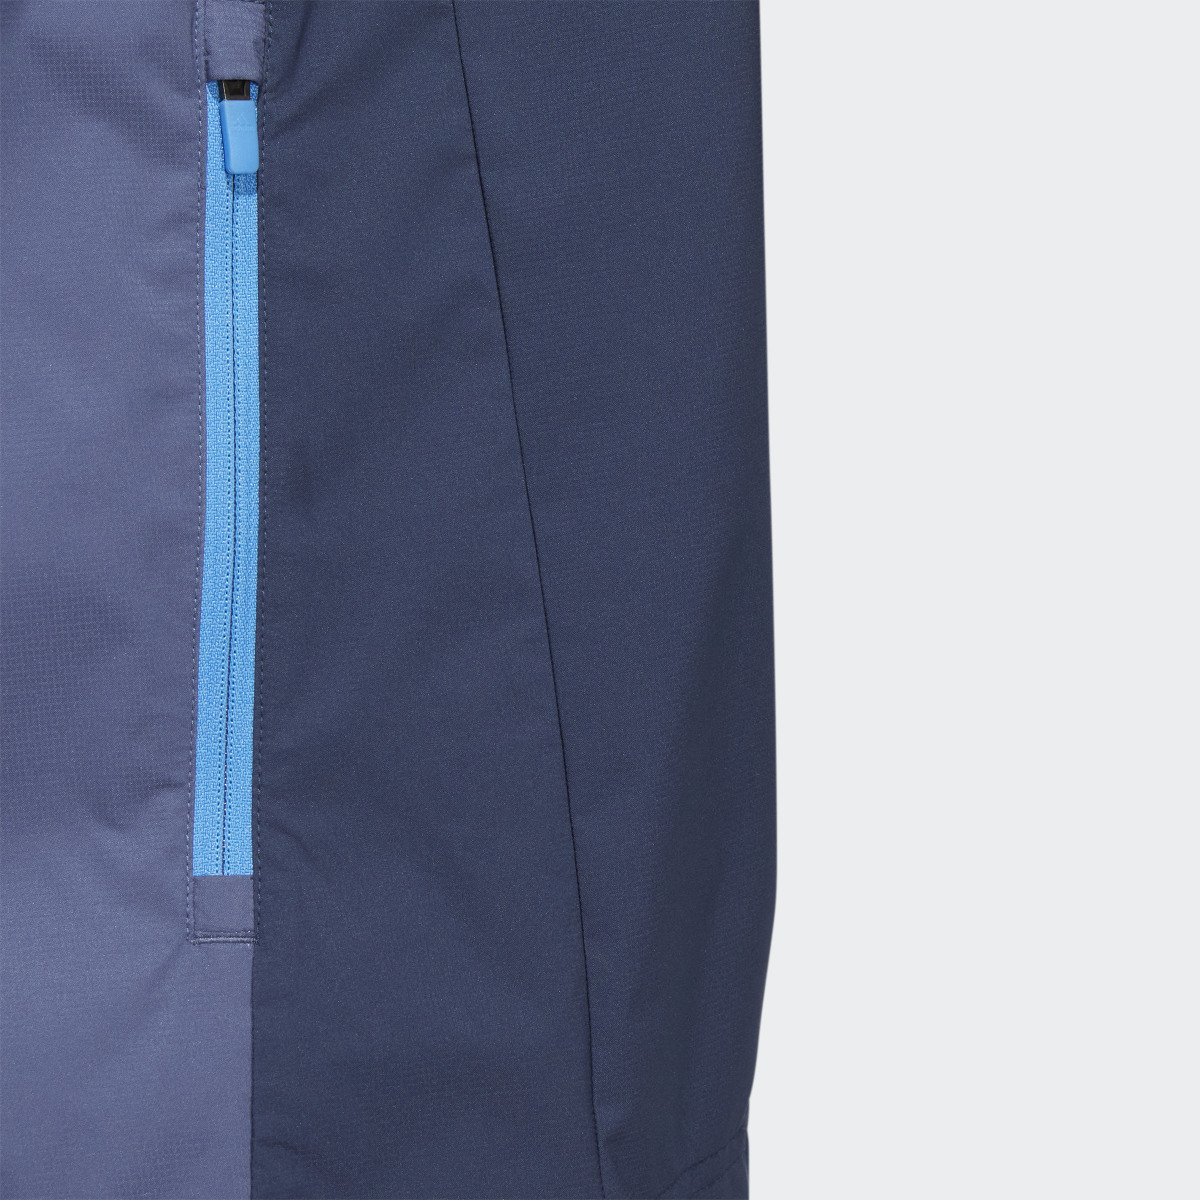 Adidas Provisional Short Sleeve Jacket. 7